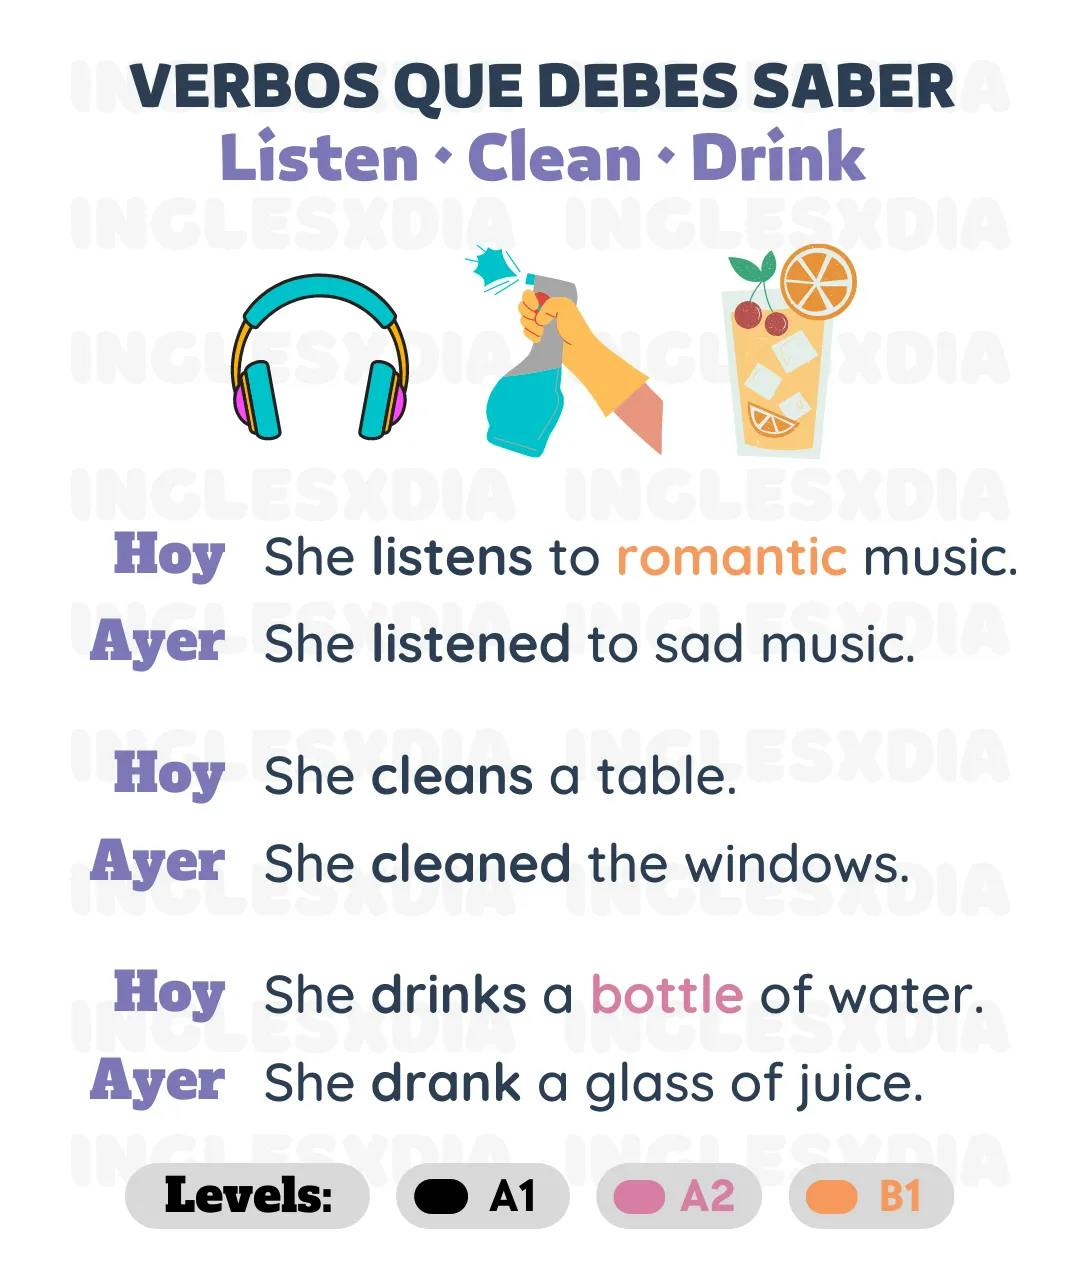 Listen · Clean · Drink